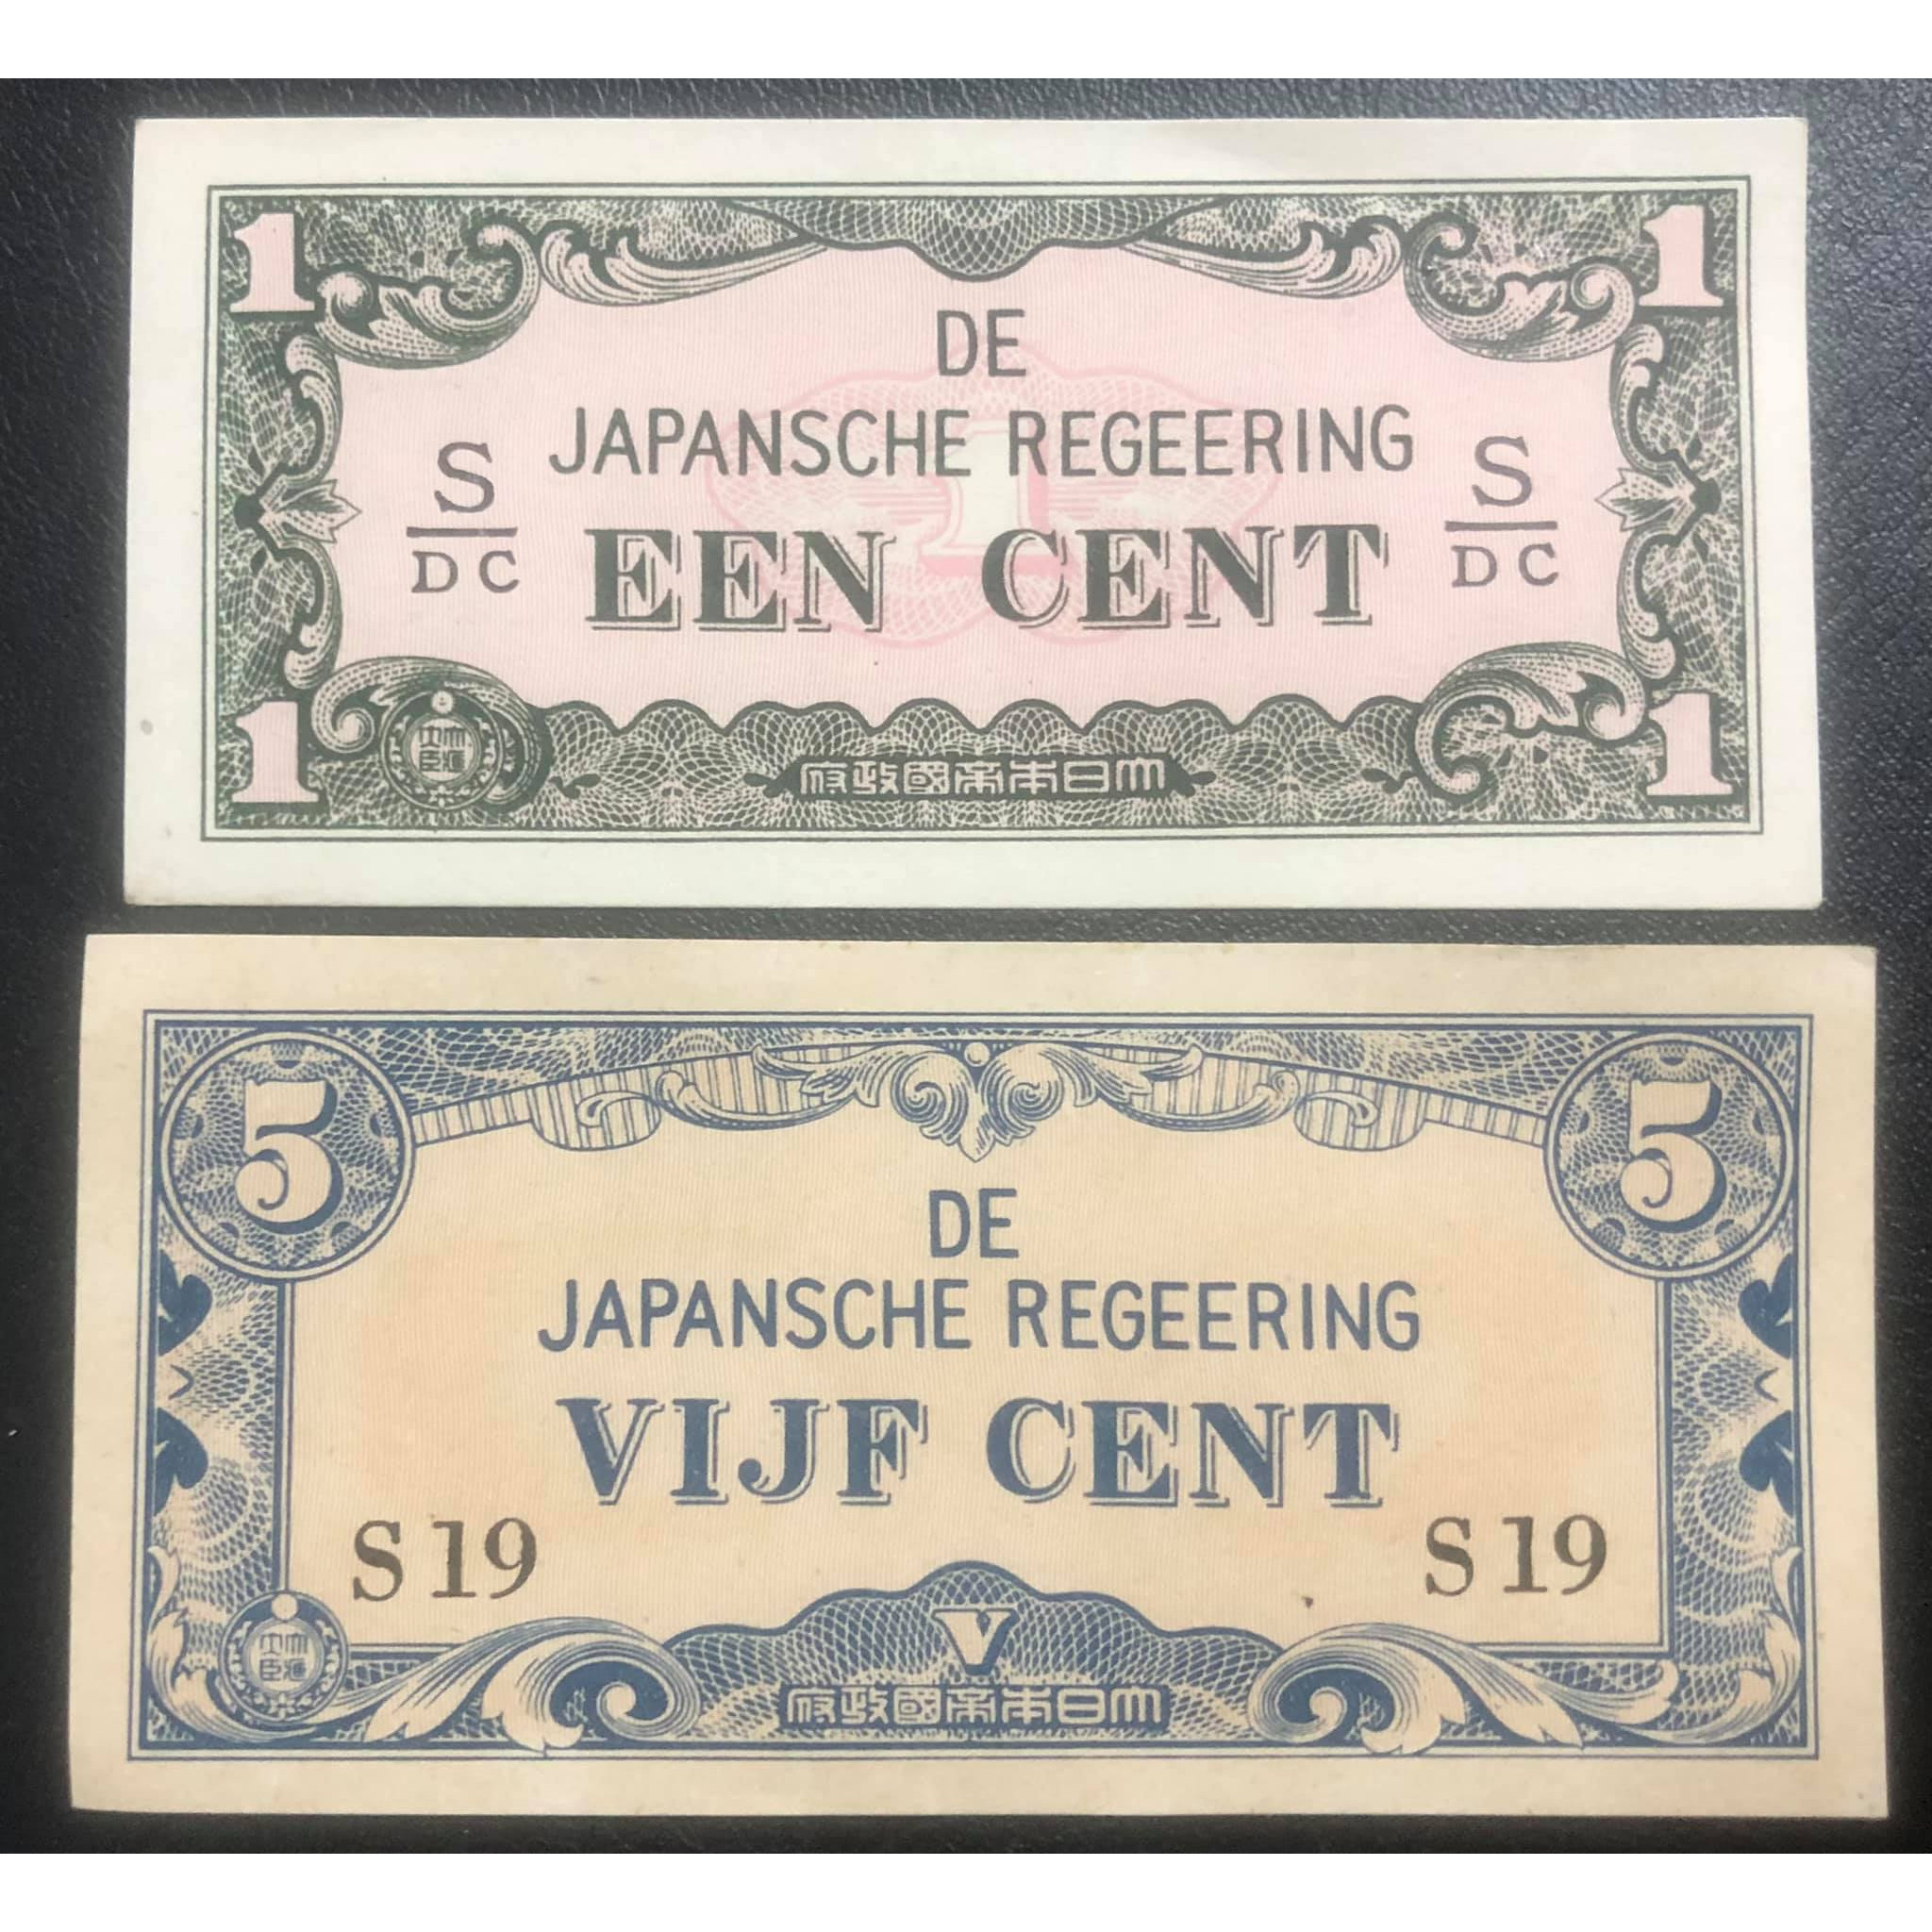 Cặp tiền Nhật Bản sử dụng tại Đông Ấn Hà Lan trong chiến tranh